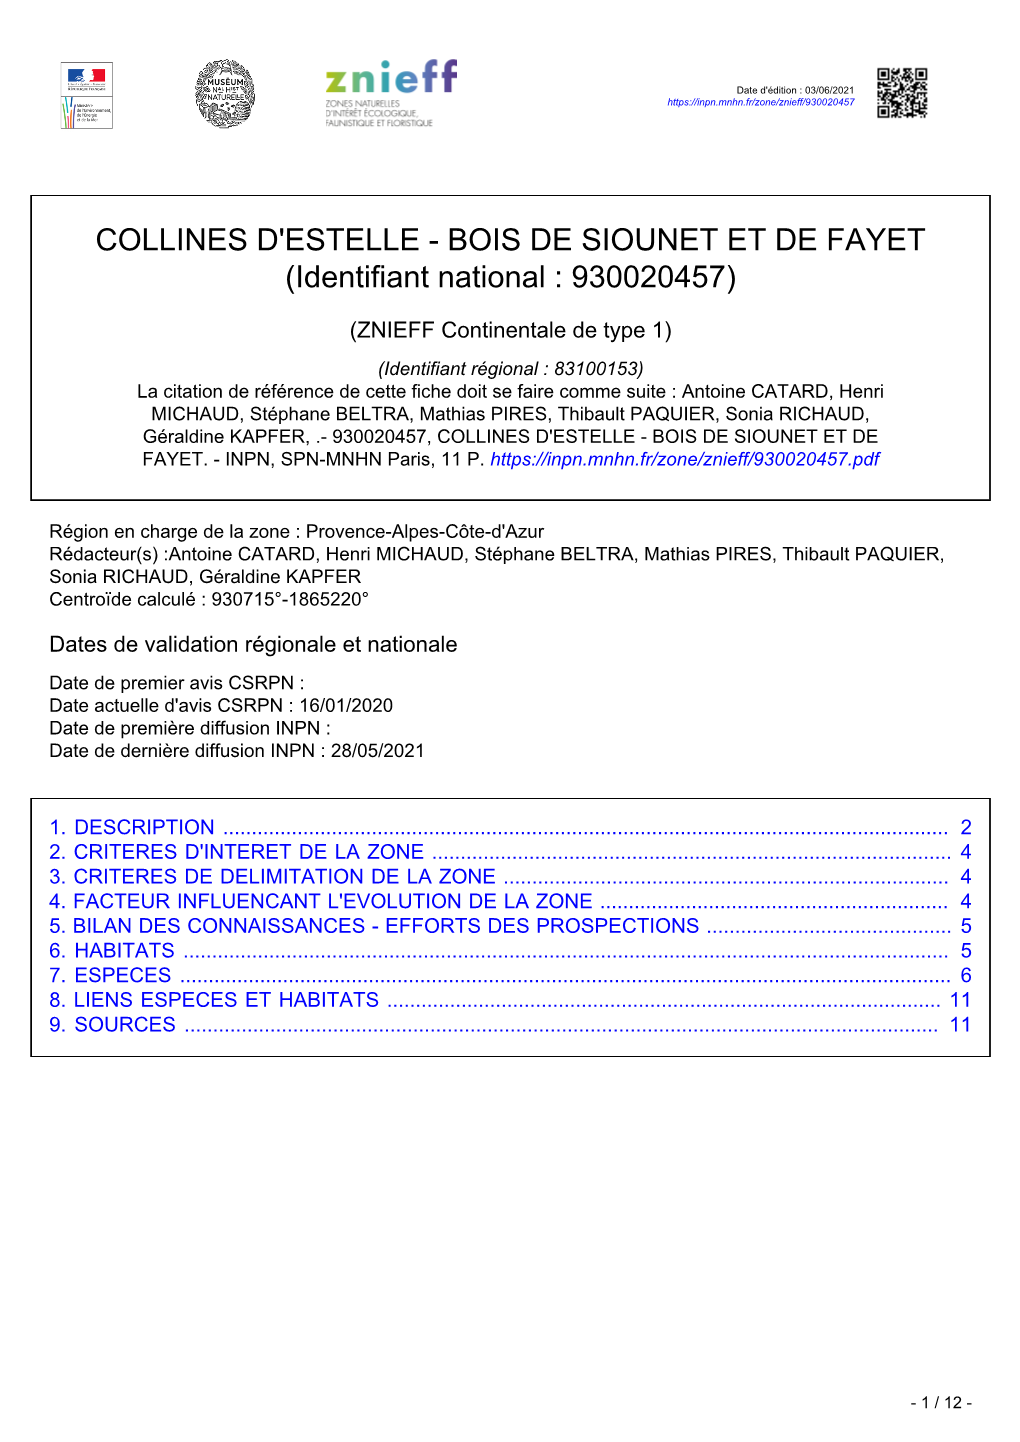 COLLINES D'estelle - BOIS DE SIOUNET ET DE FAYET (Identifiant National : 930020457)